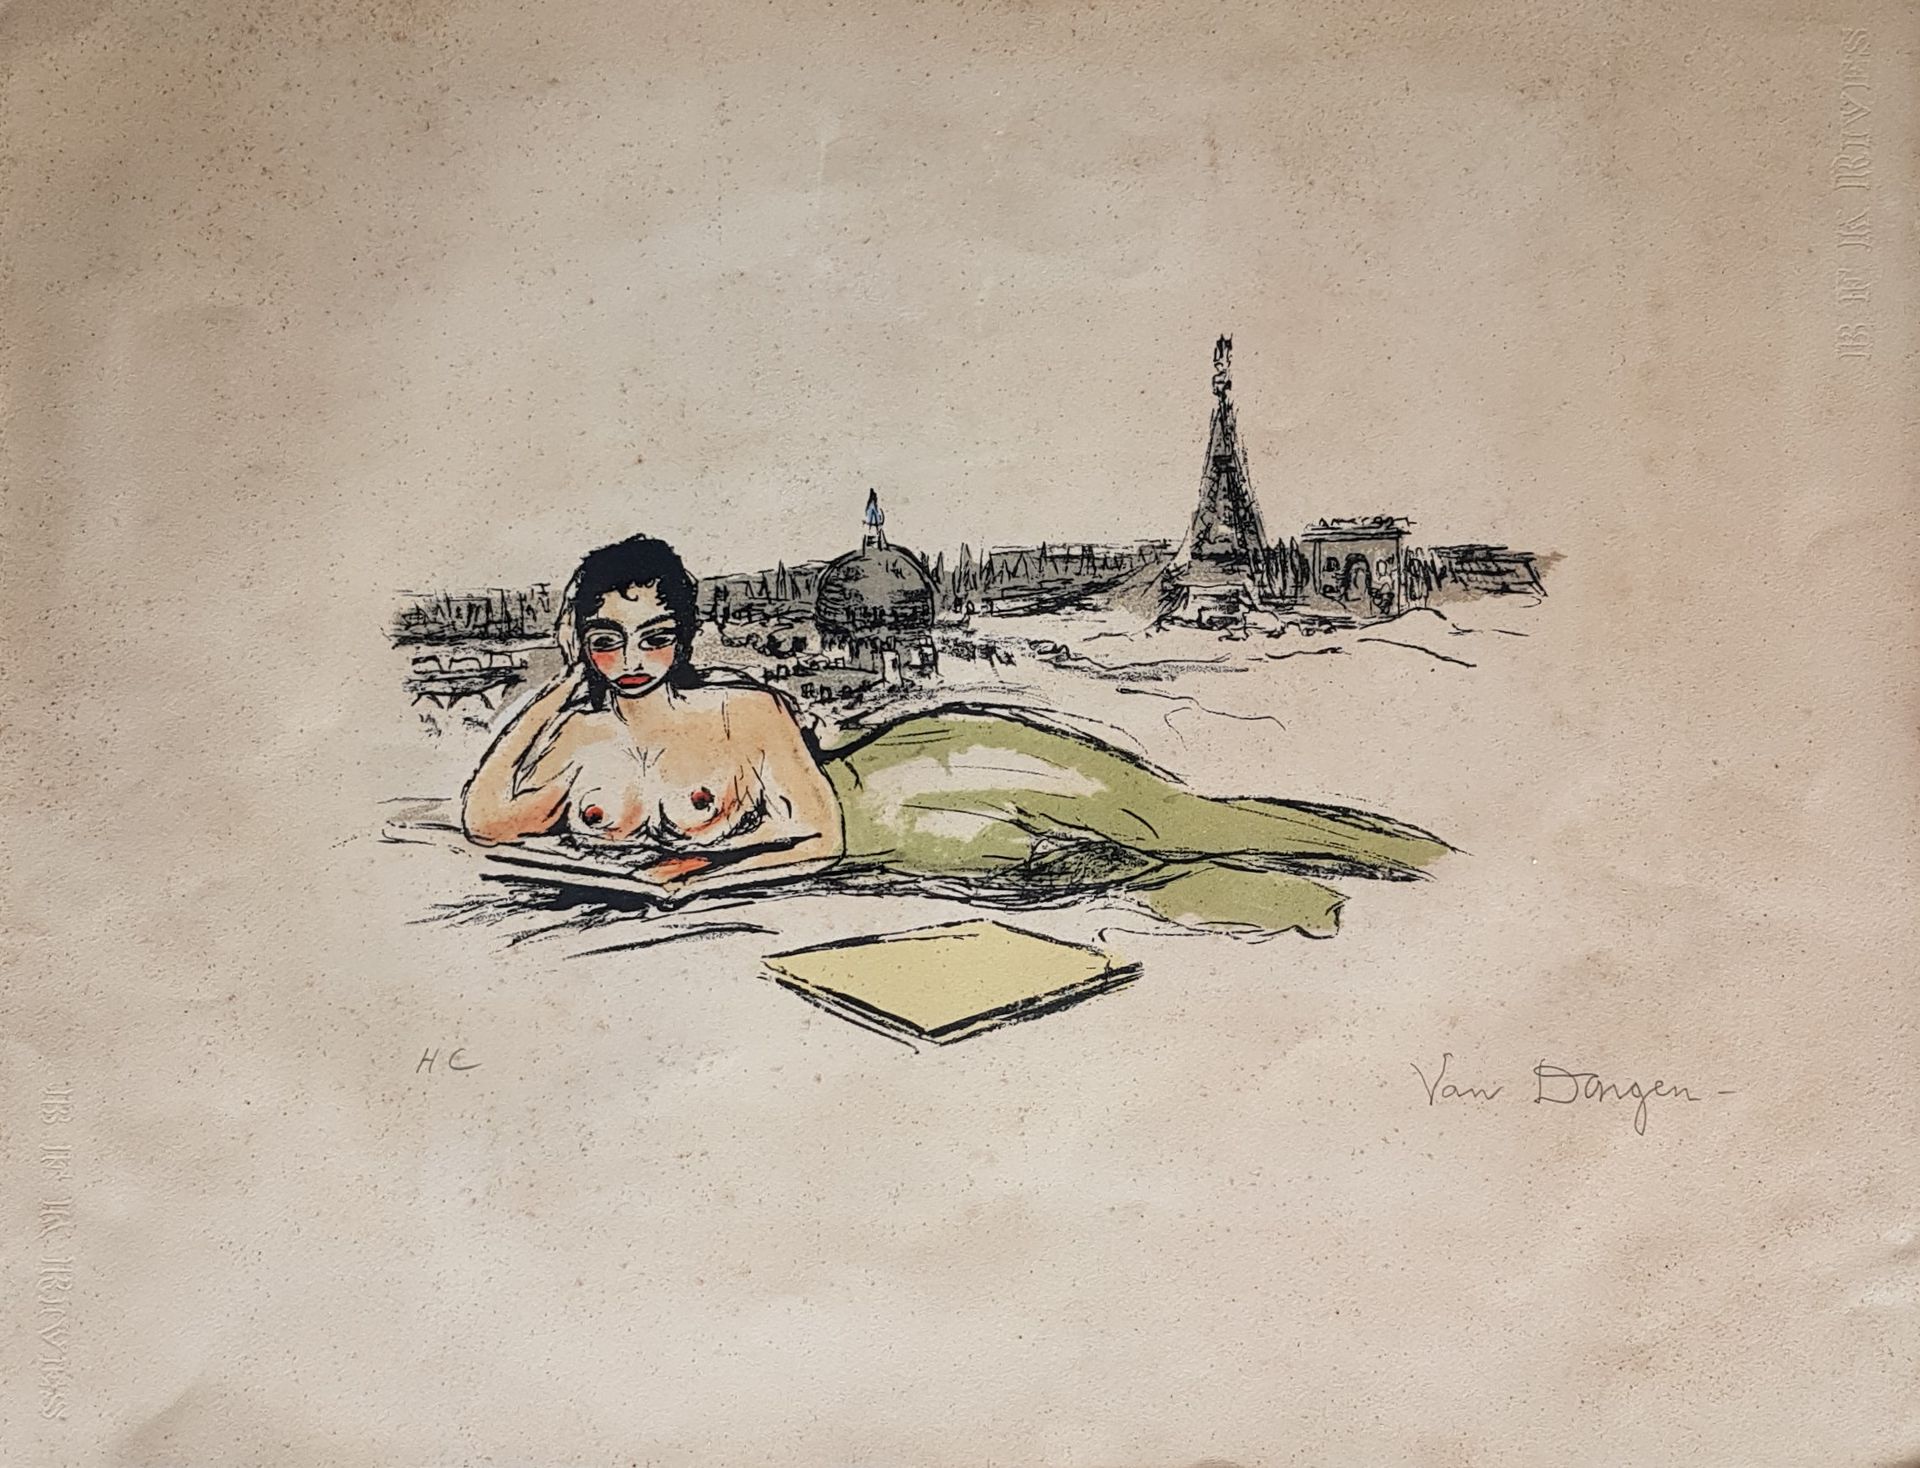 VAN DONGEN Kess "La Seine ou la Sirène" Litografía en colores de 1962 "H.C" (Hor&hellip;